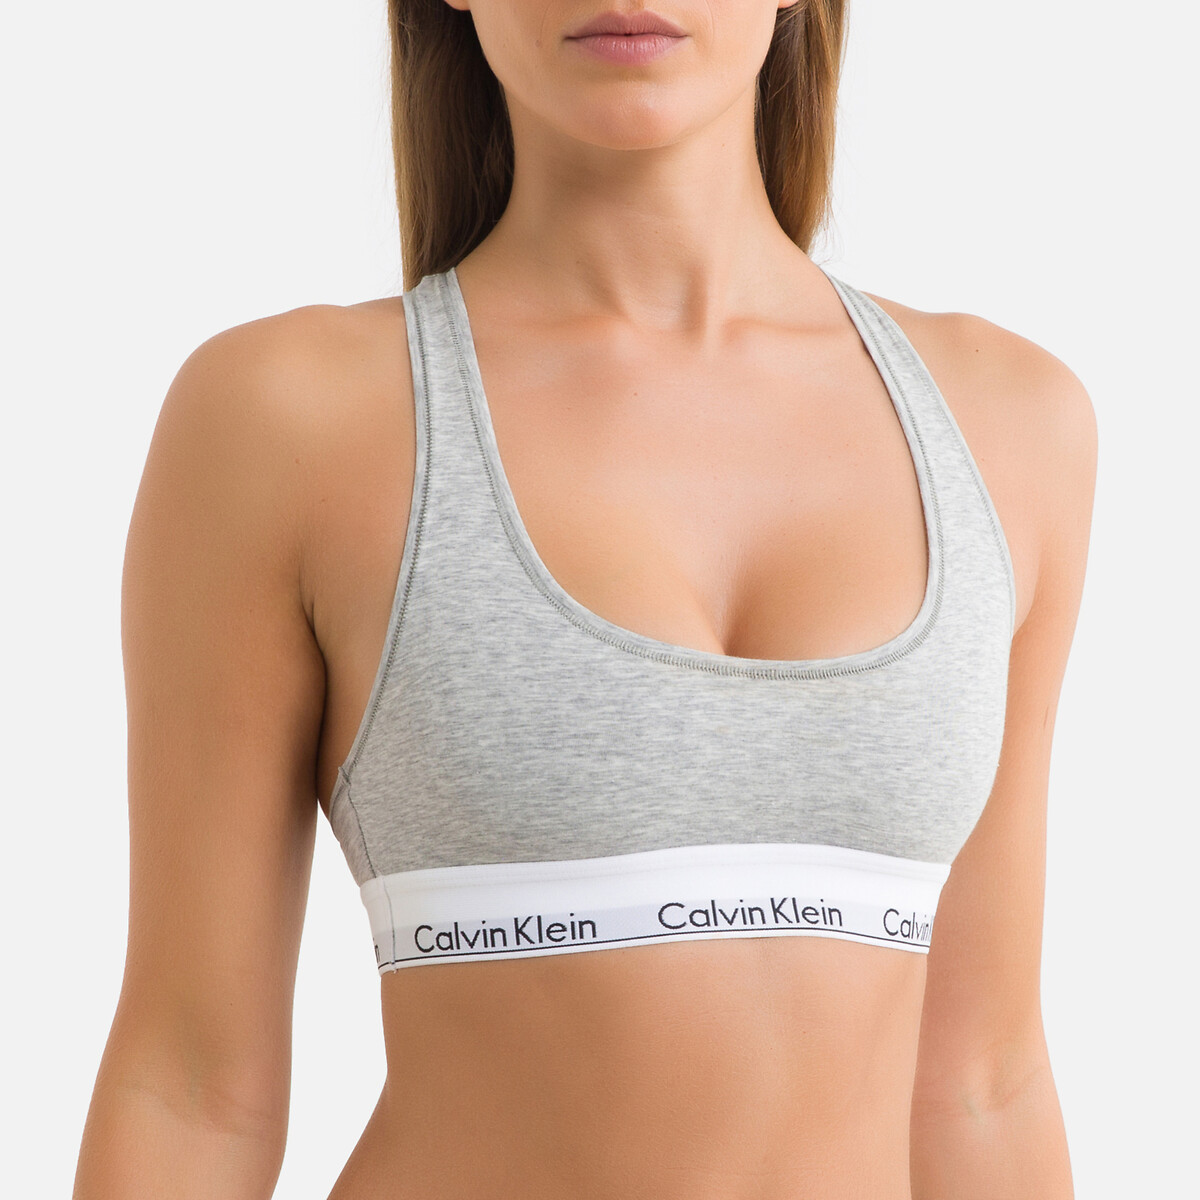 Bh modern cotton mit Calvin Klein Underwear | Redoute